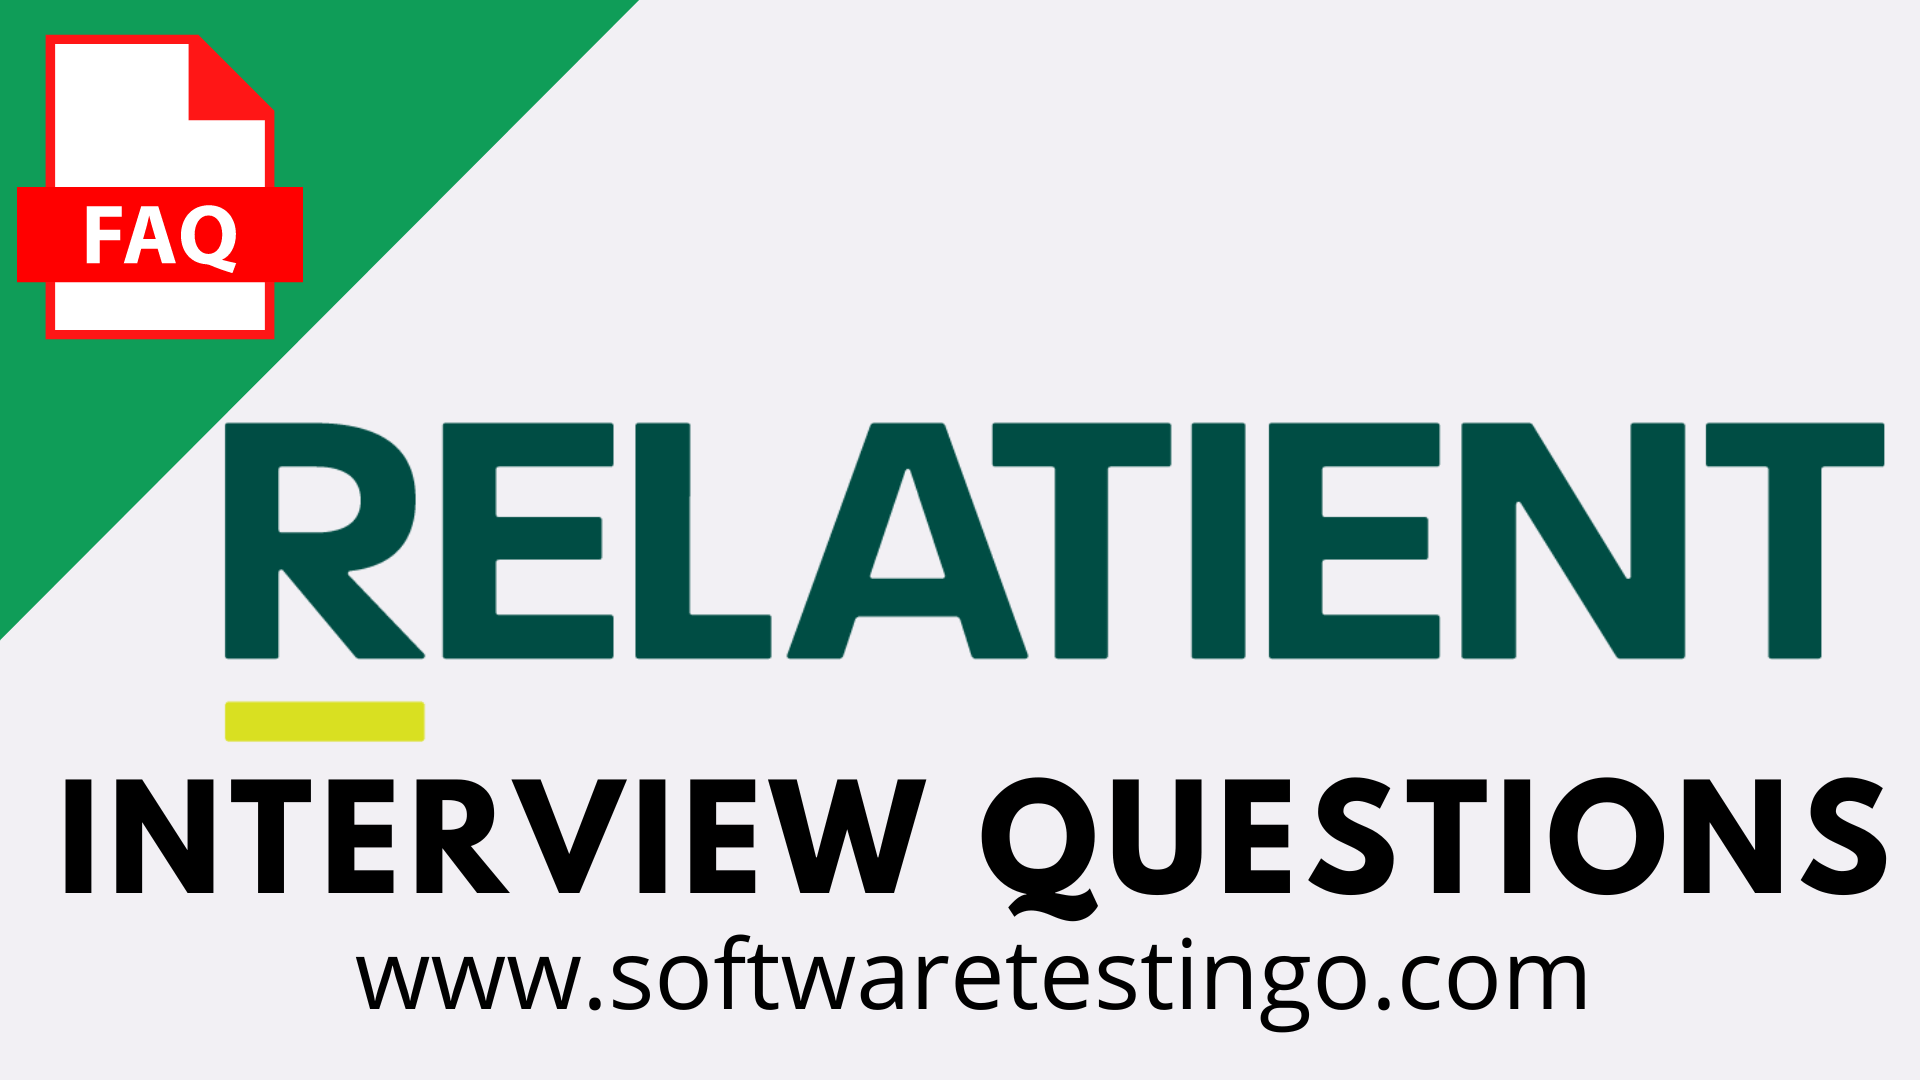 Relatient Interview Questions